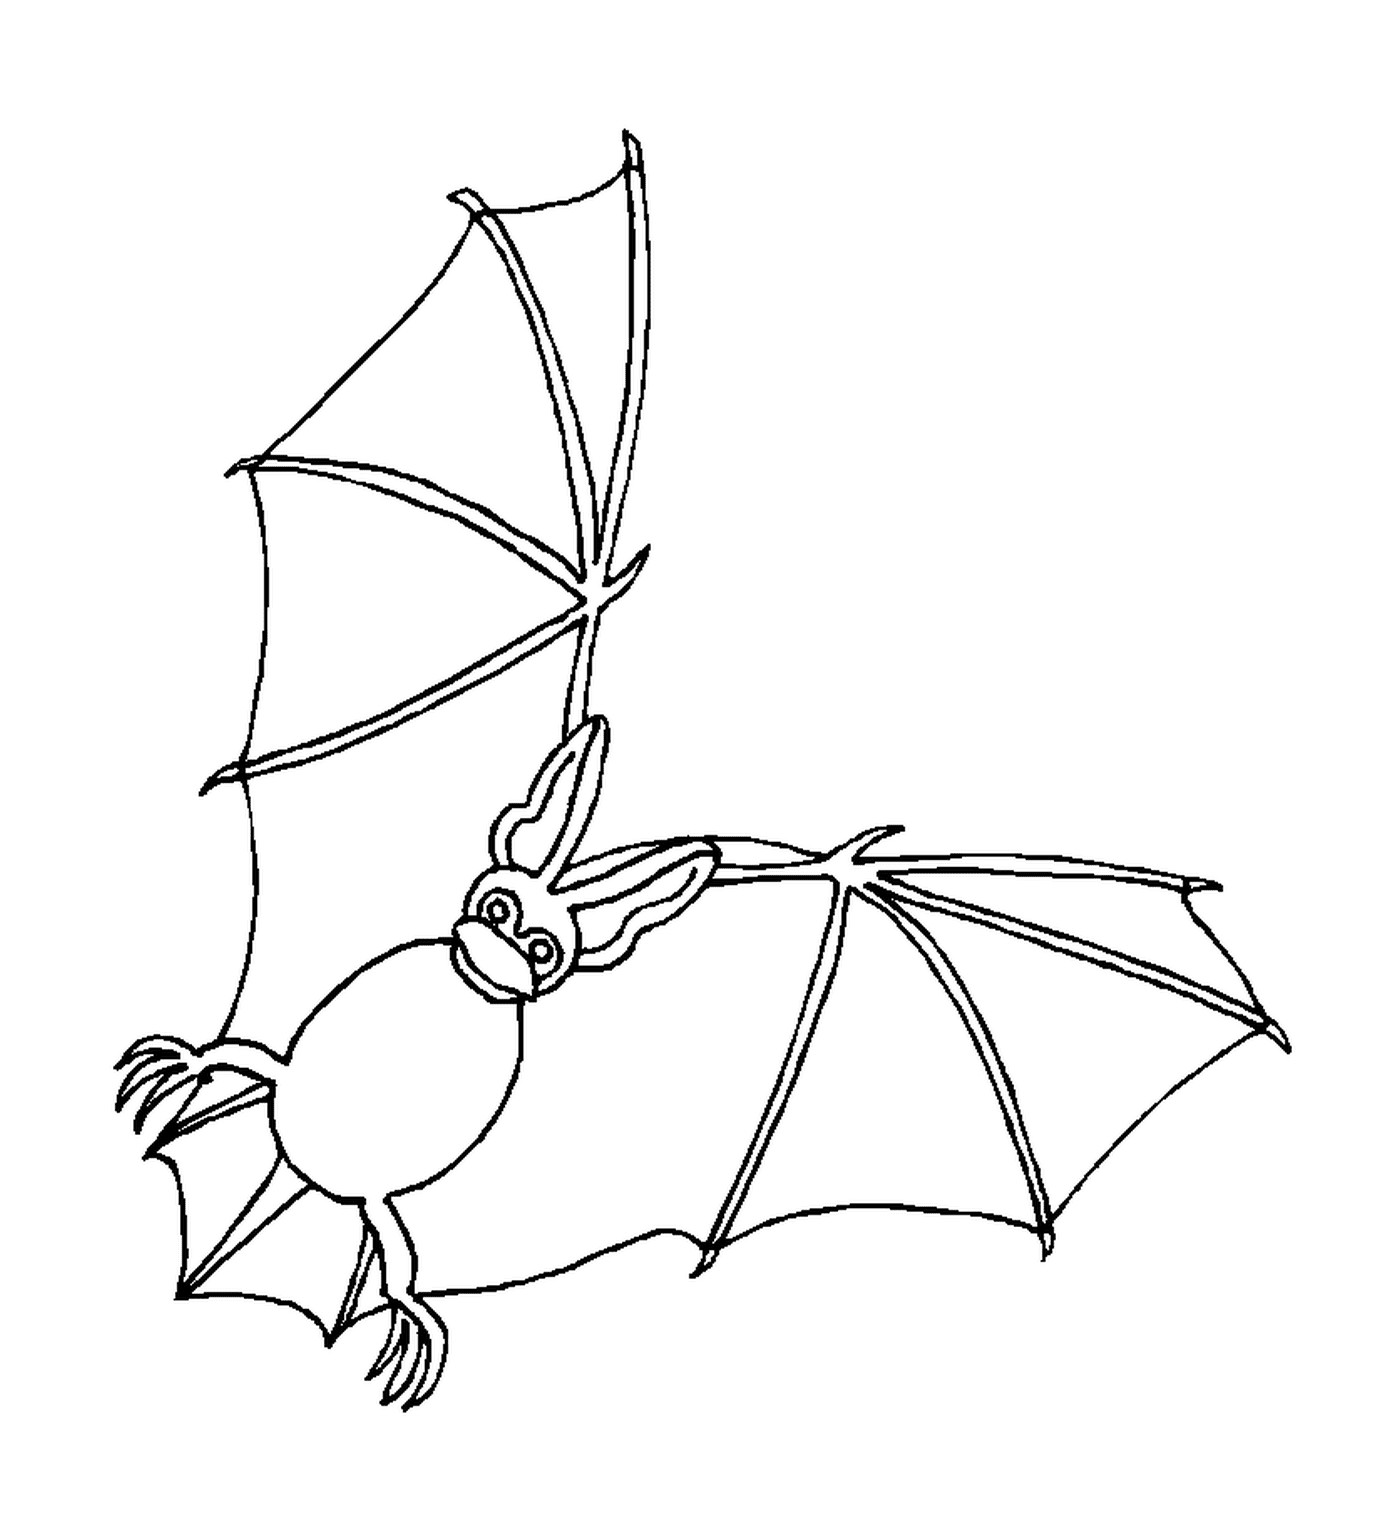  murciélago volando en el aire 